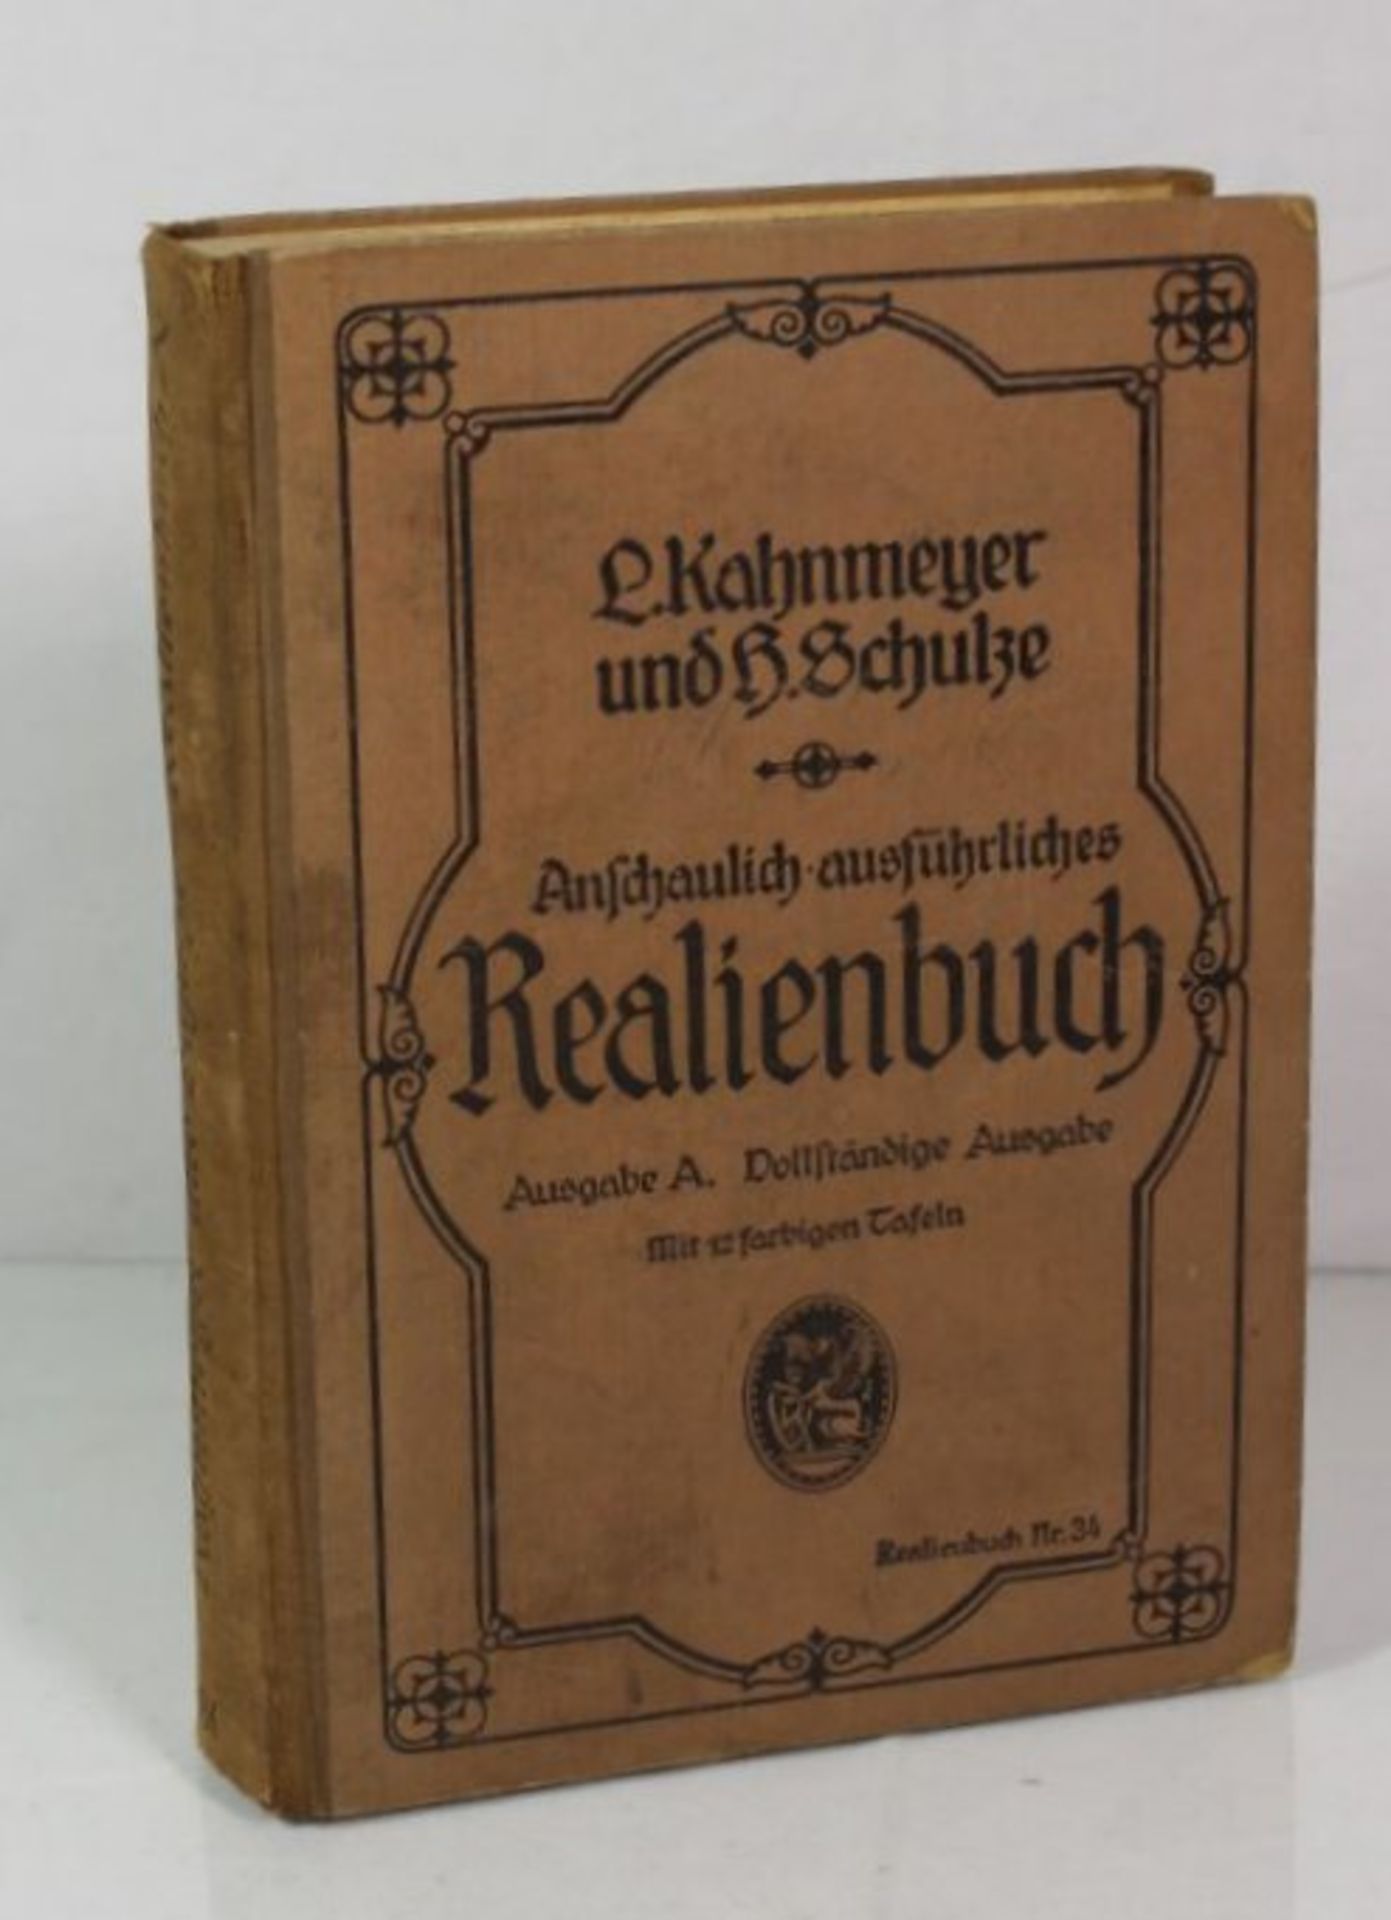 Kahnmeyer / Schulze, Realienbuch, Ausgabe A, 1927.- - -22.61 % buyer's premium on the hammer